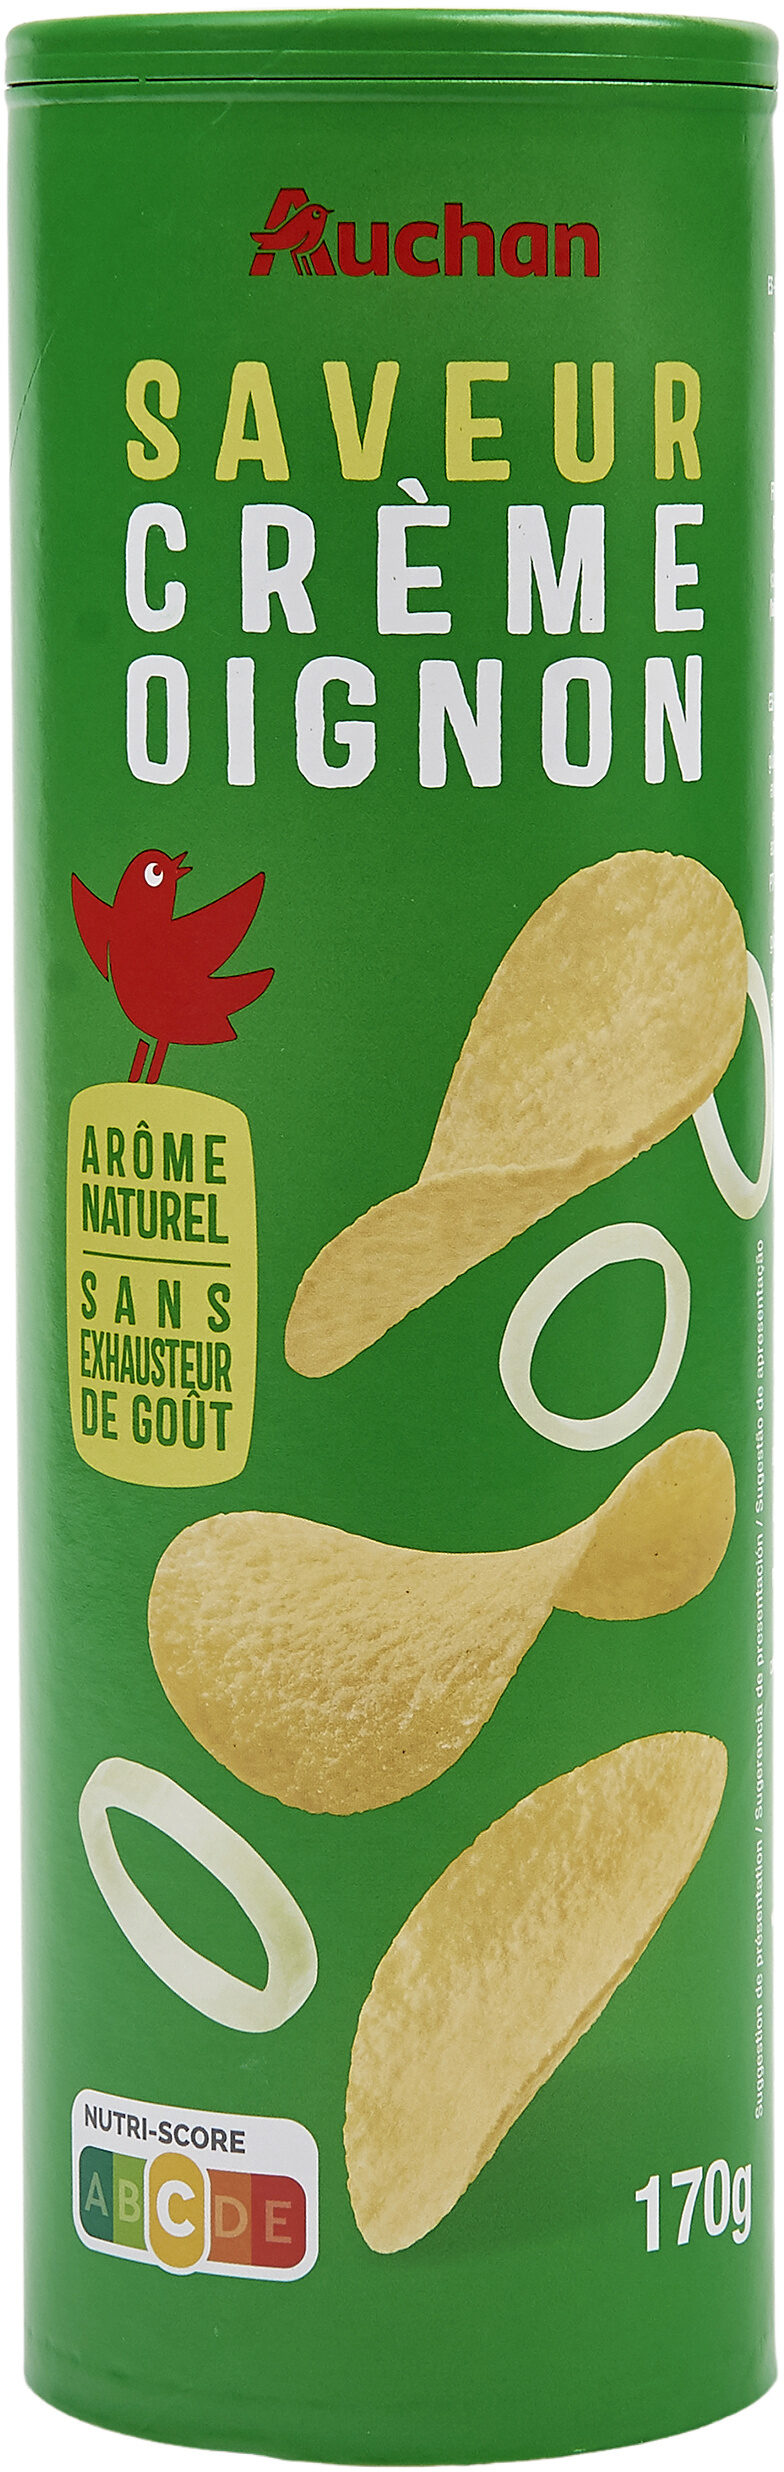 Tuiles saveur crème oignon - Product - fr